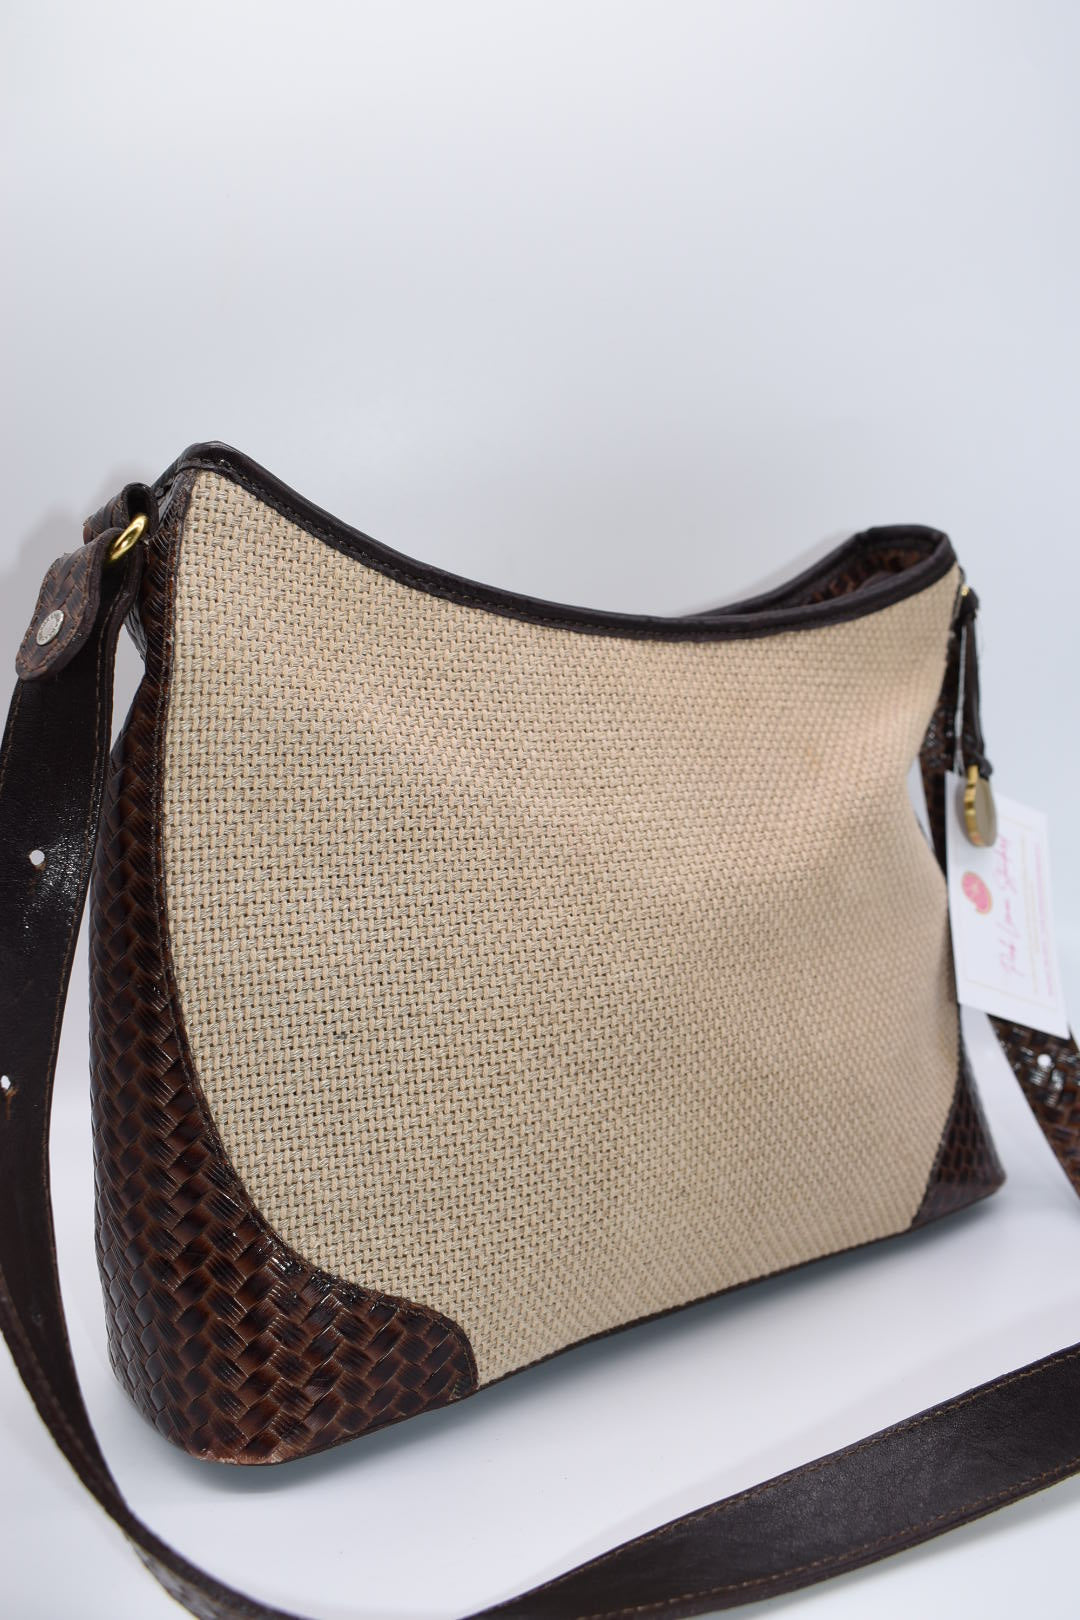 Brahmin Leather & Natural Canvas Woven Shoulder Bag